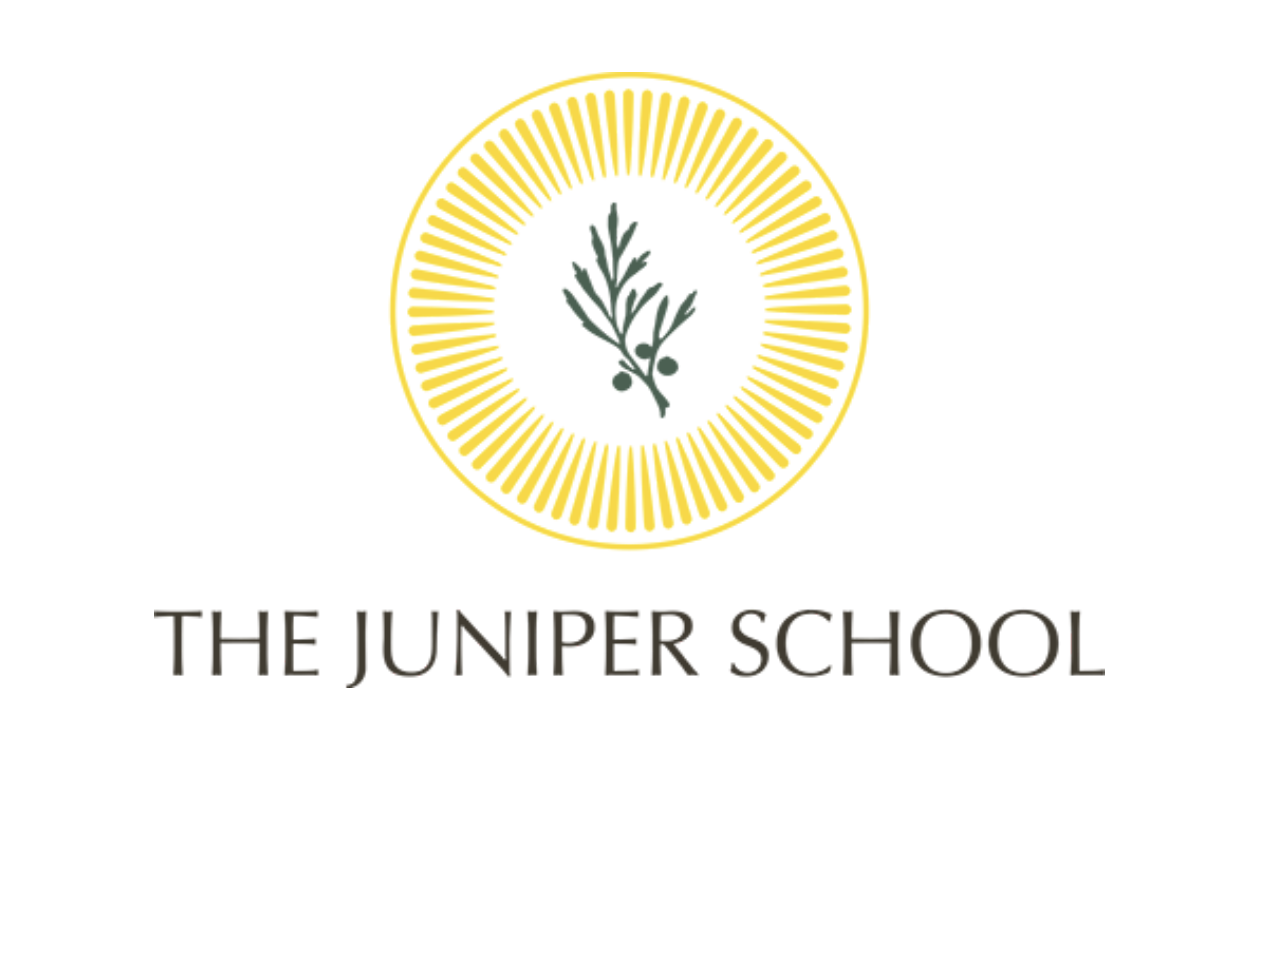 The Juniper School logo